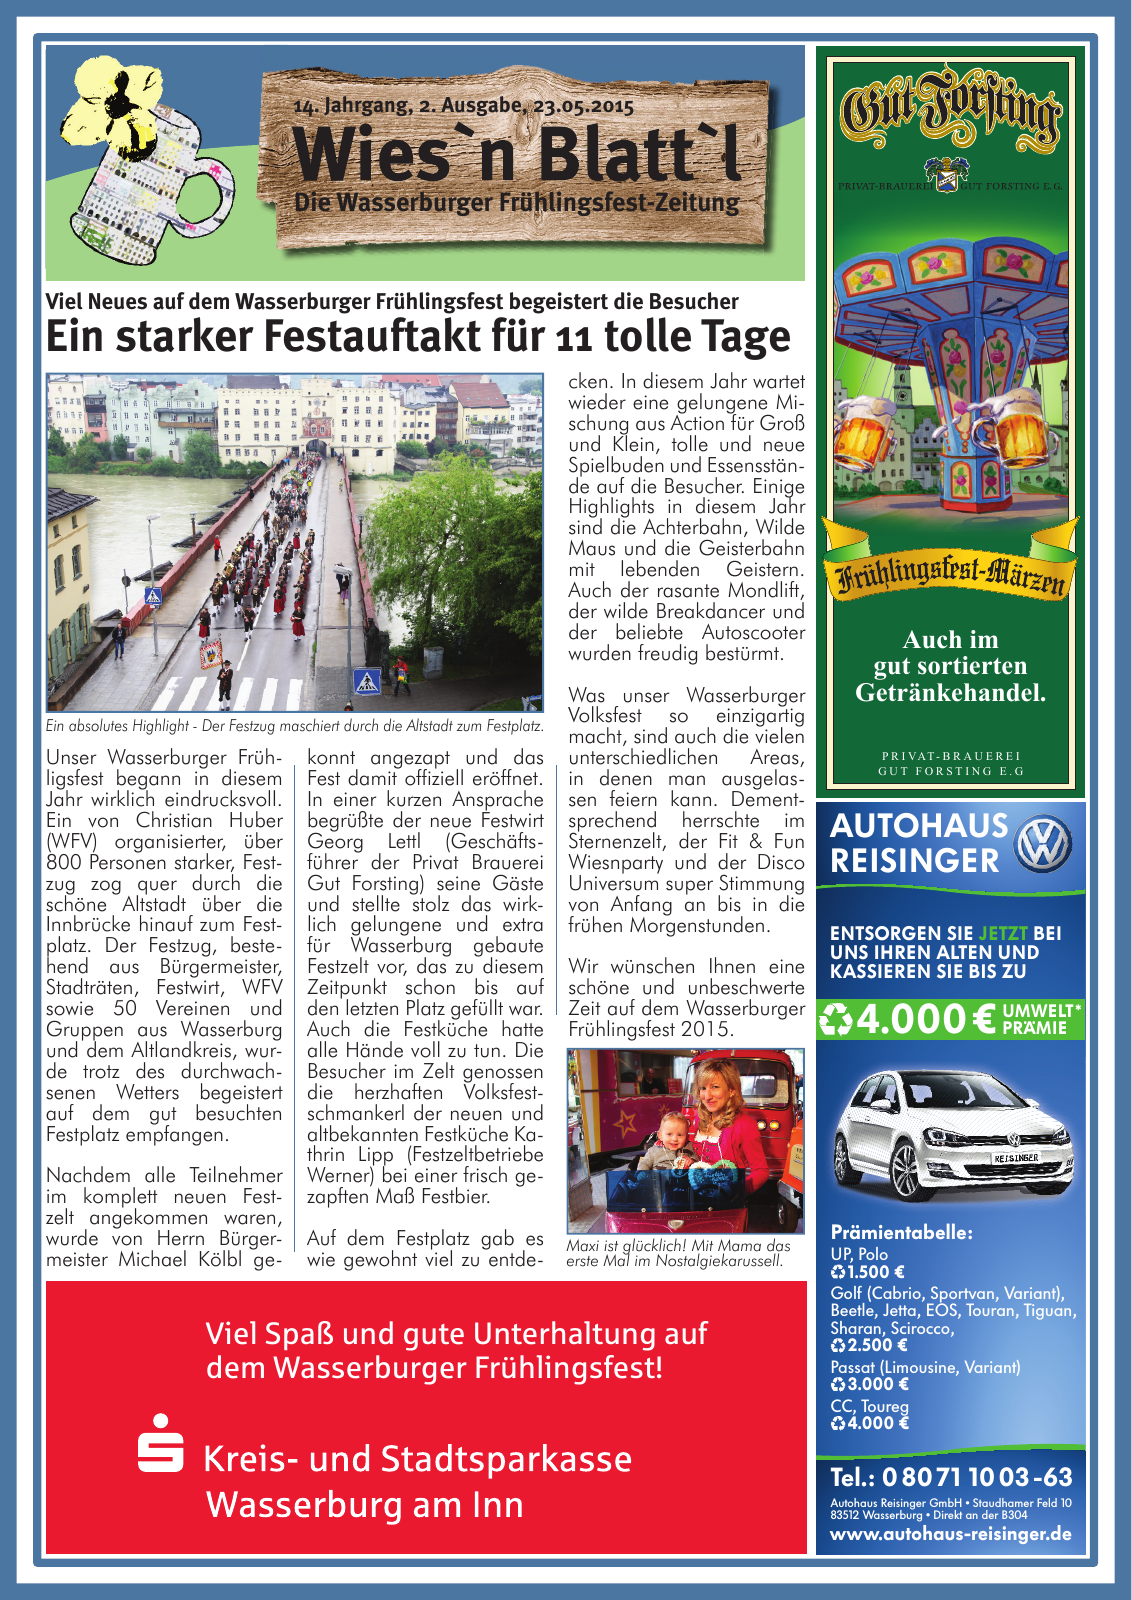 Vorschau Wasserburger Wiesnblattl 2015 Ausgabe 2 Seite 1